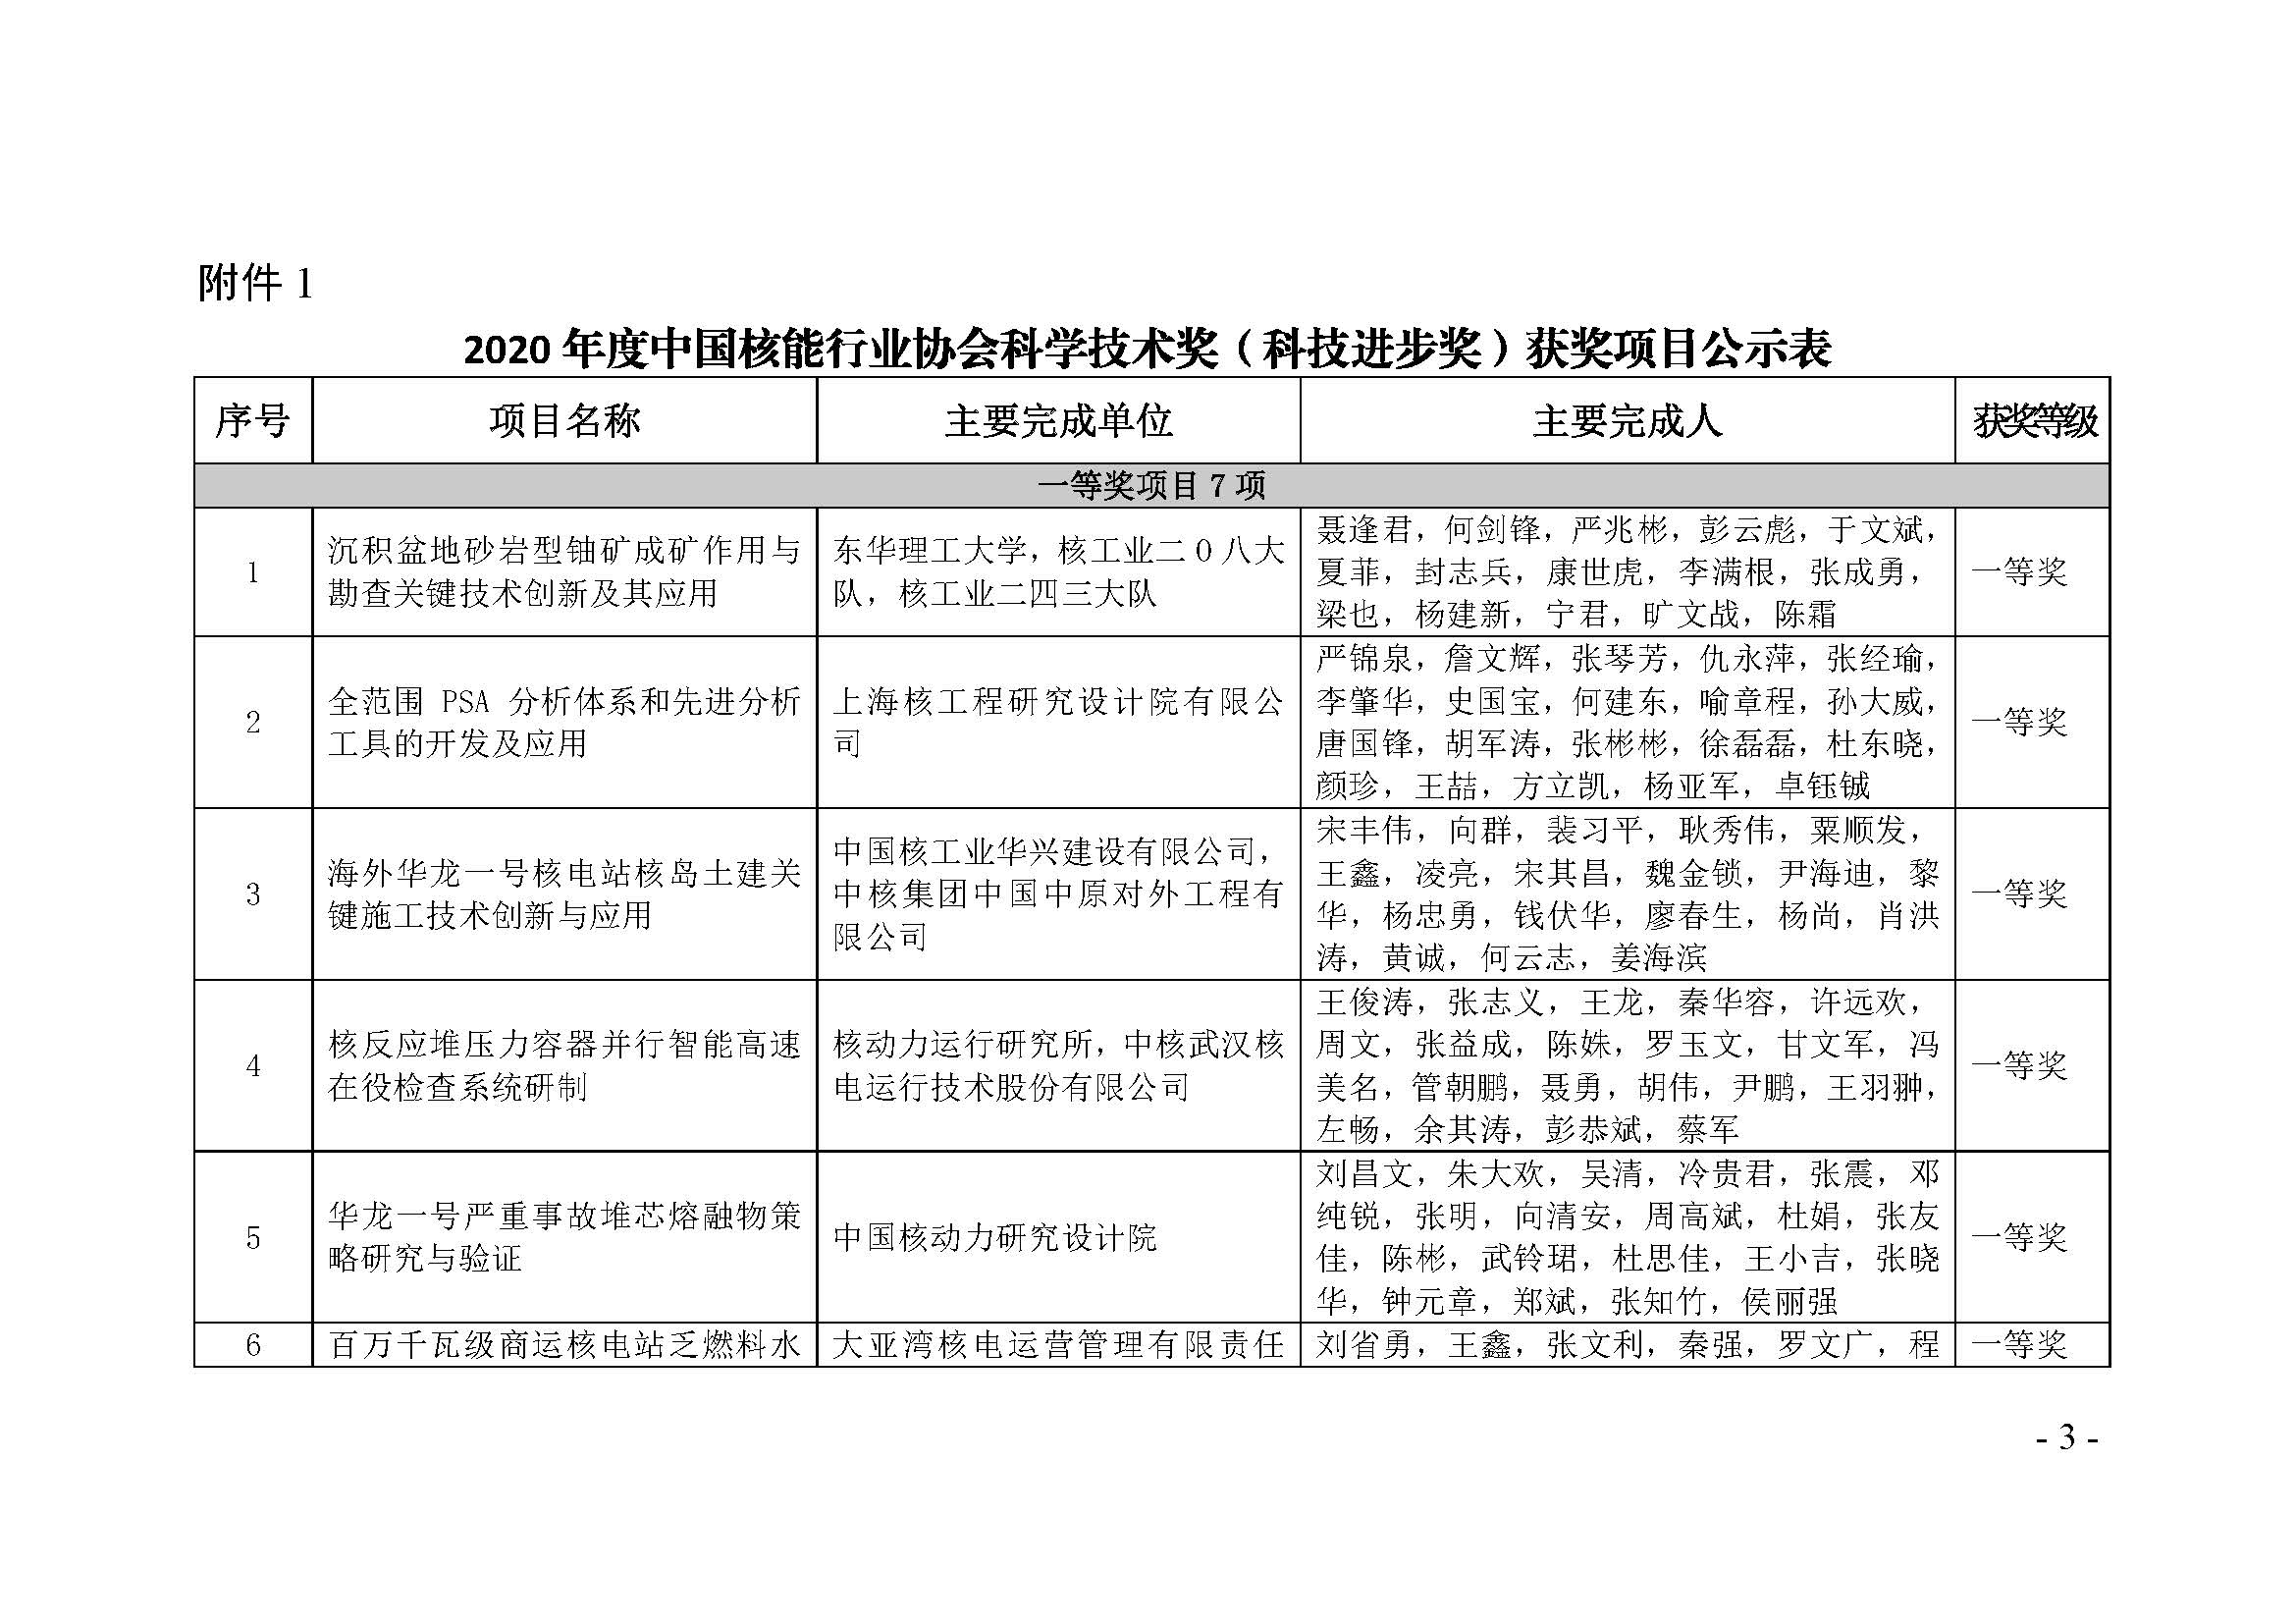 2020年度“中国核能行业协会科学技术奖获奖项目”公示_页面_03.jpg